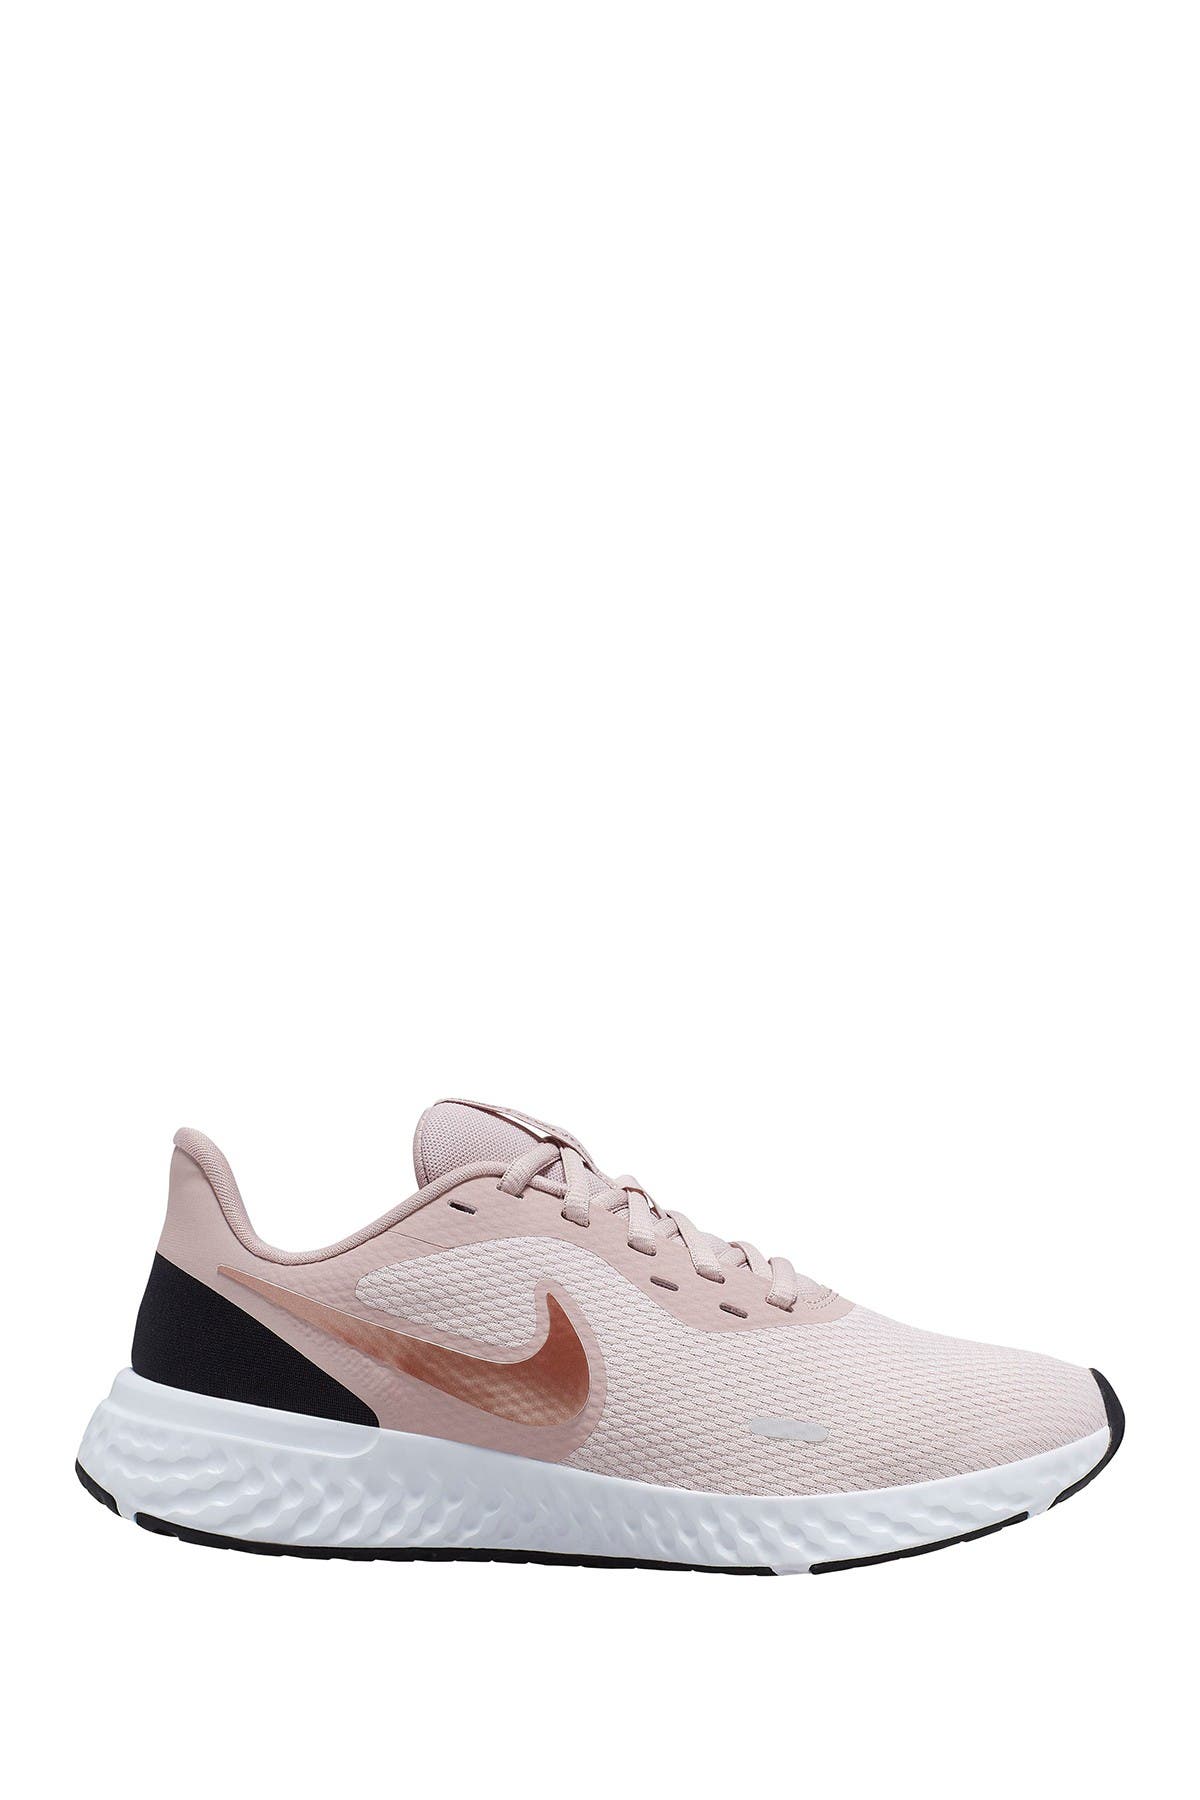 Nike | Revolution 5 Running Shoe 